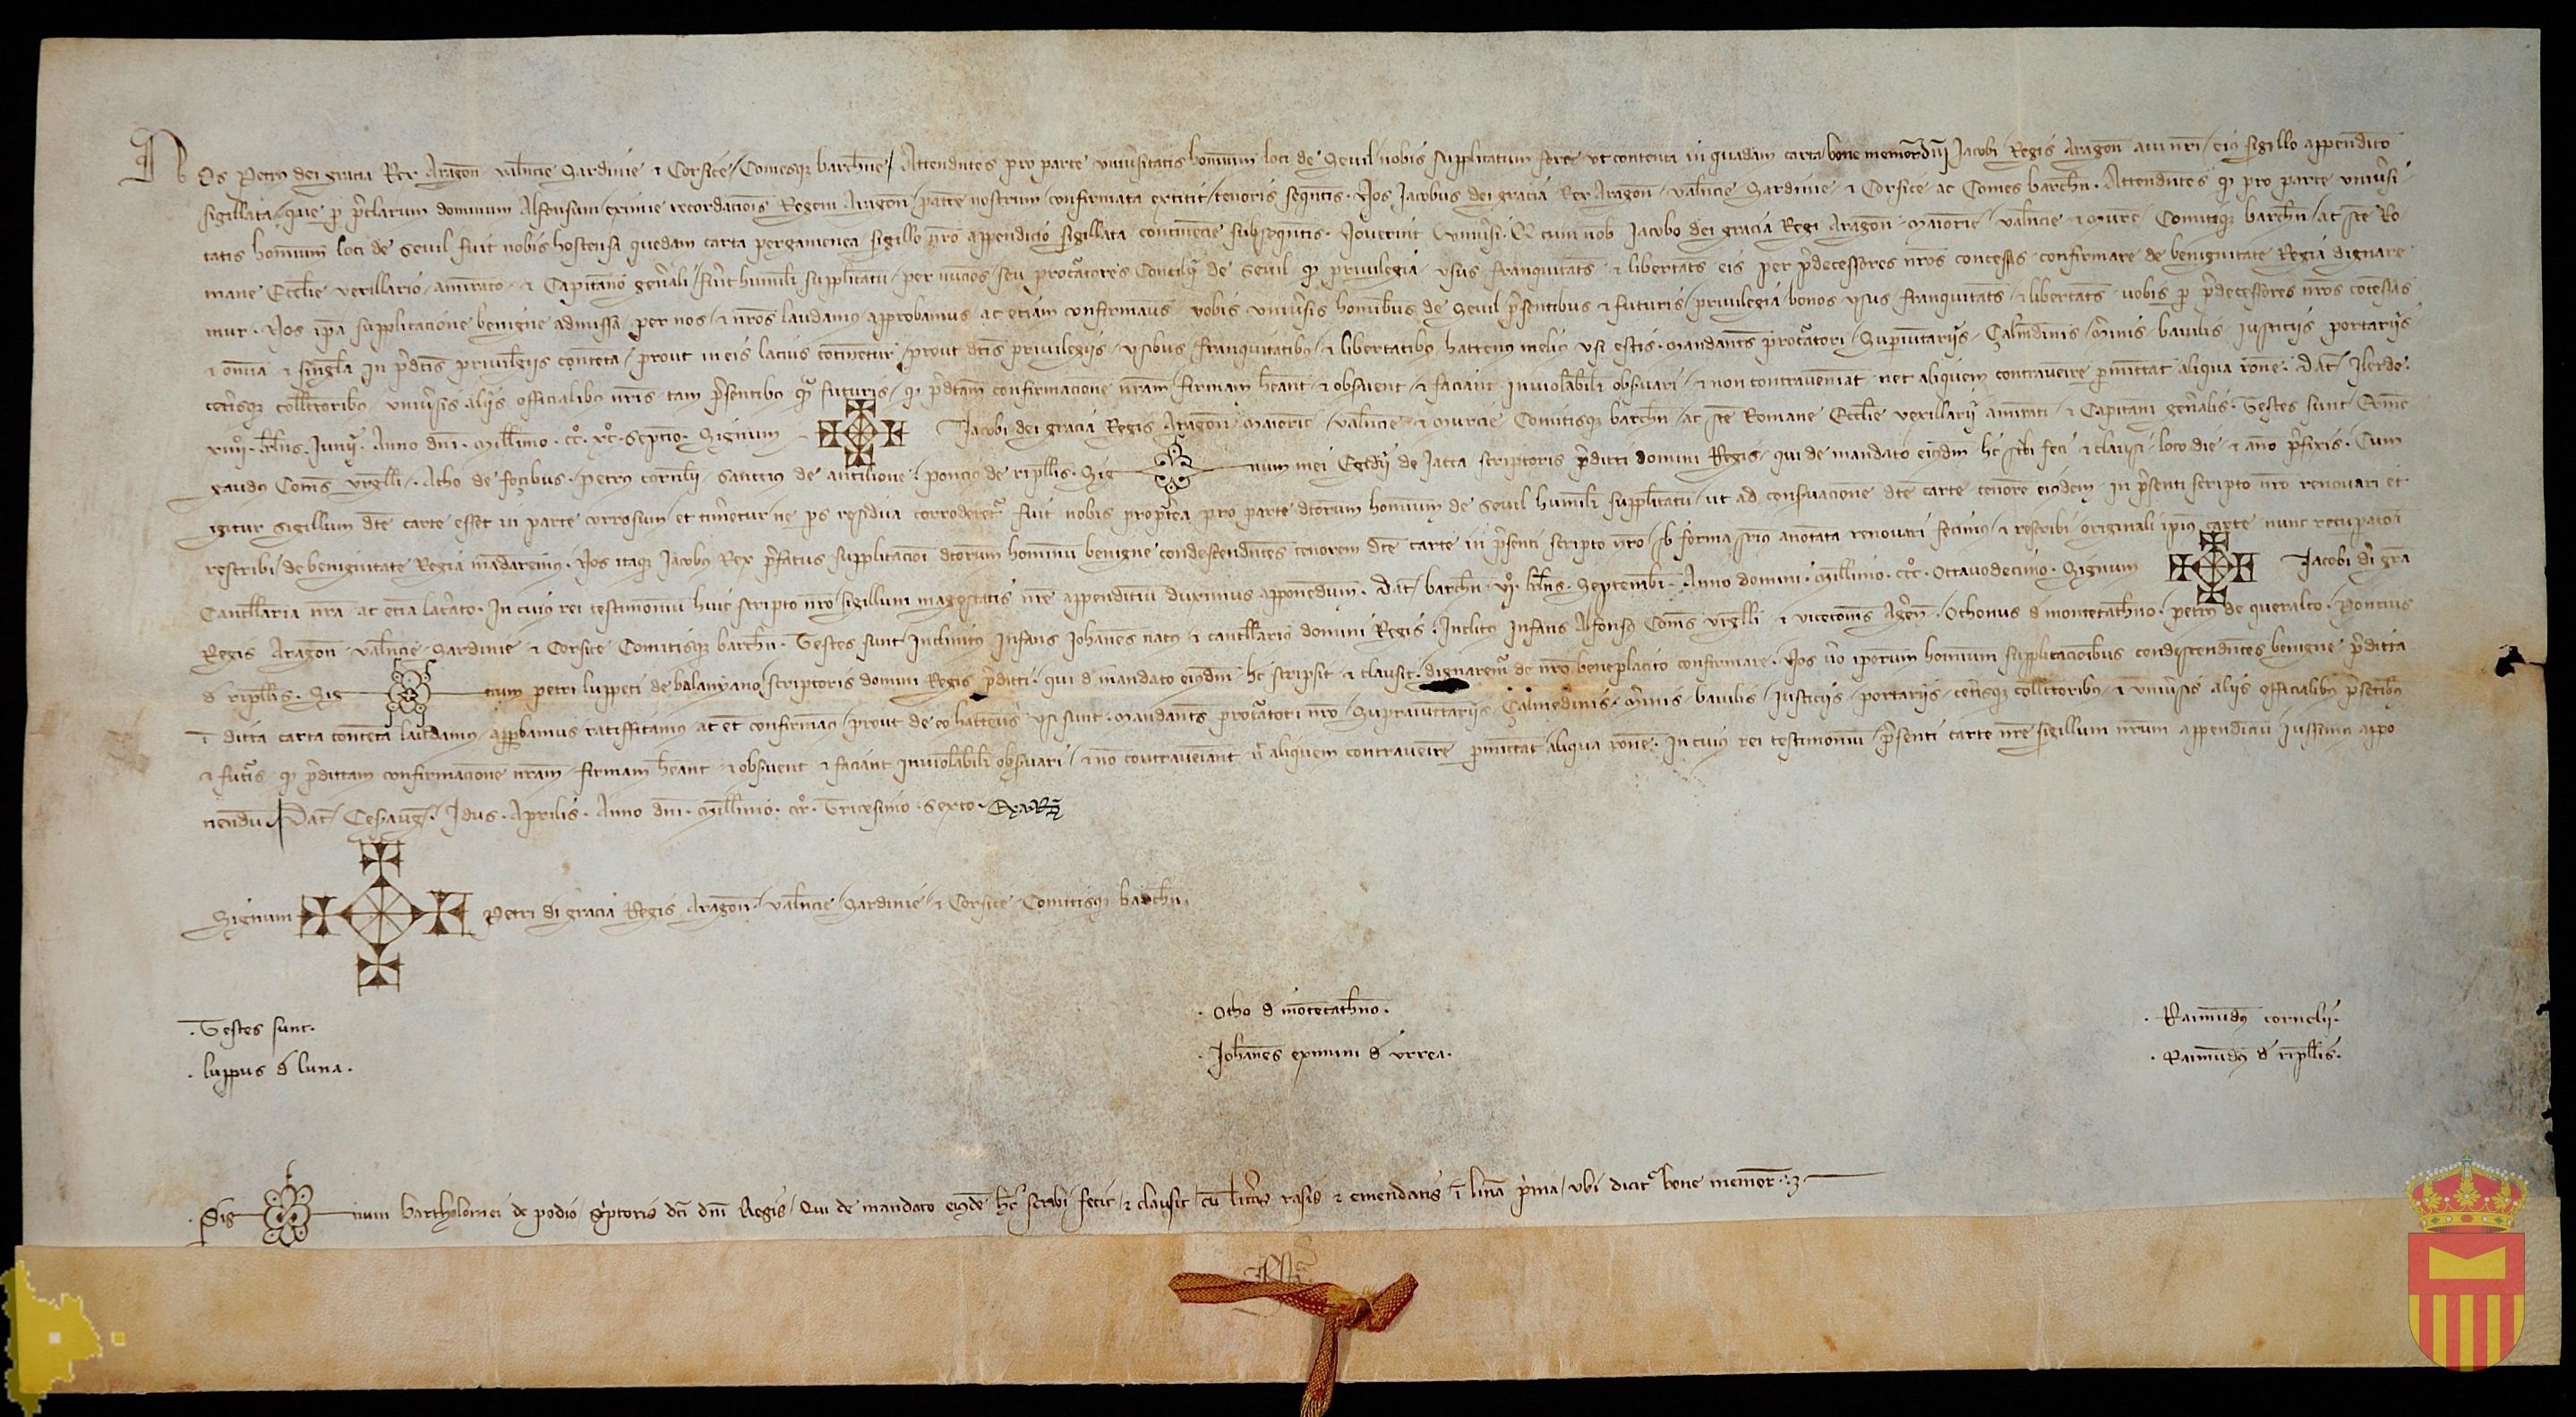 Pedro IV confirma el privilegio real de Jaime II por el que concede a los habitantes de Sevil las franquicias y libertades concedidas a aquellos por sus antecesores